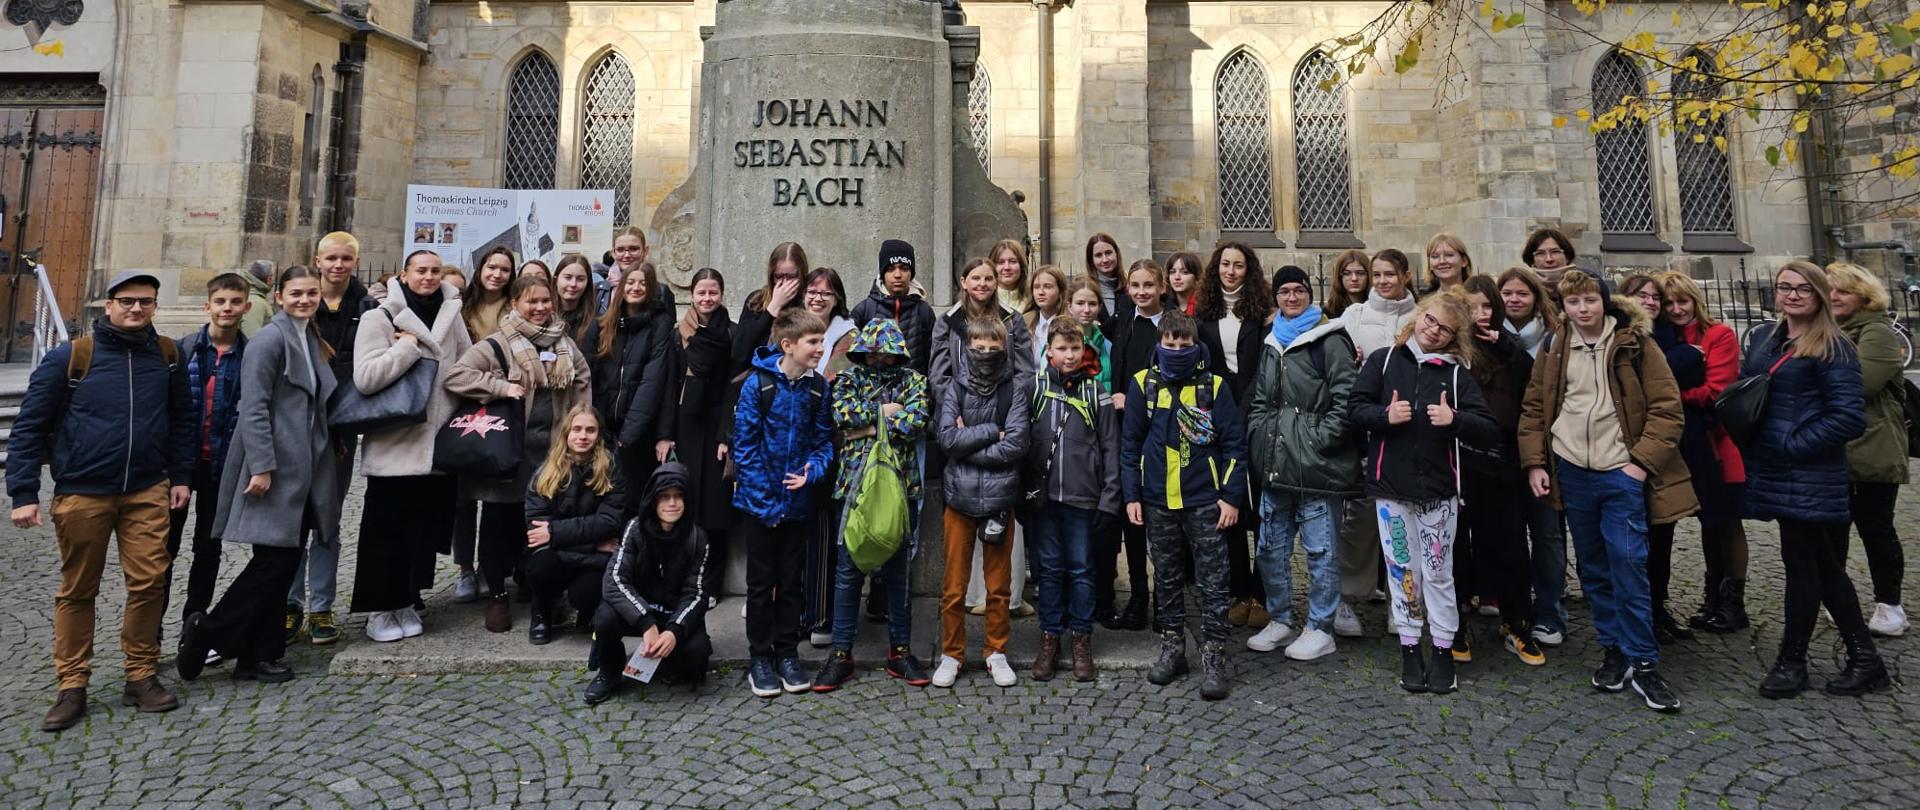 Zdjęcie grupowe pod pomnikiem J. S. Bacha w Lipsku.